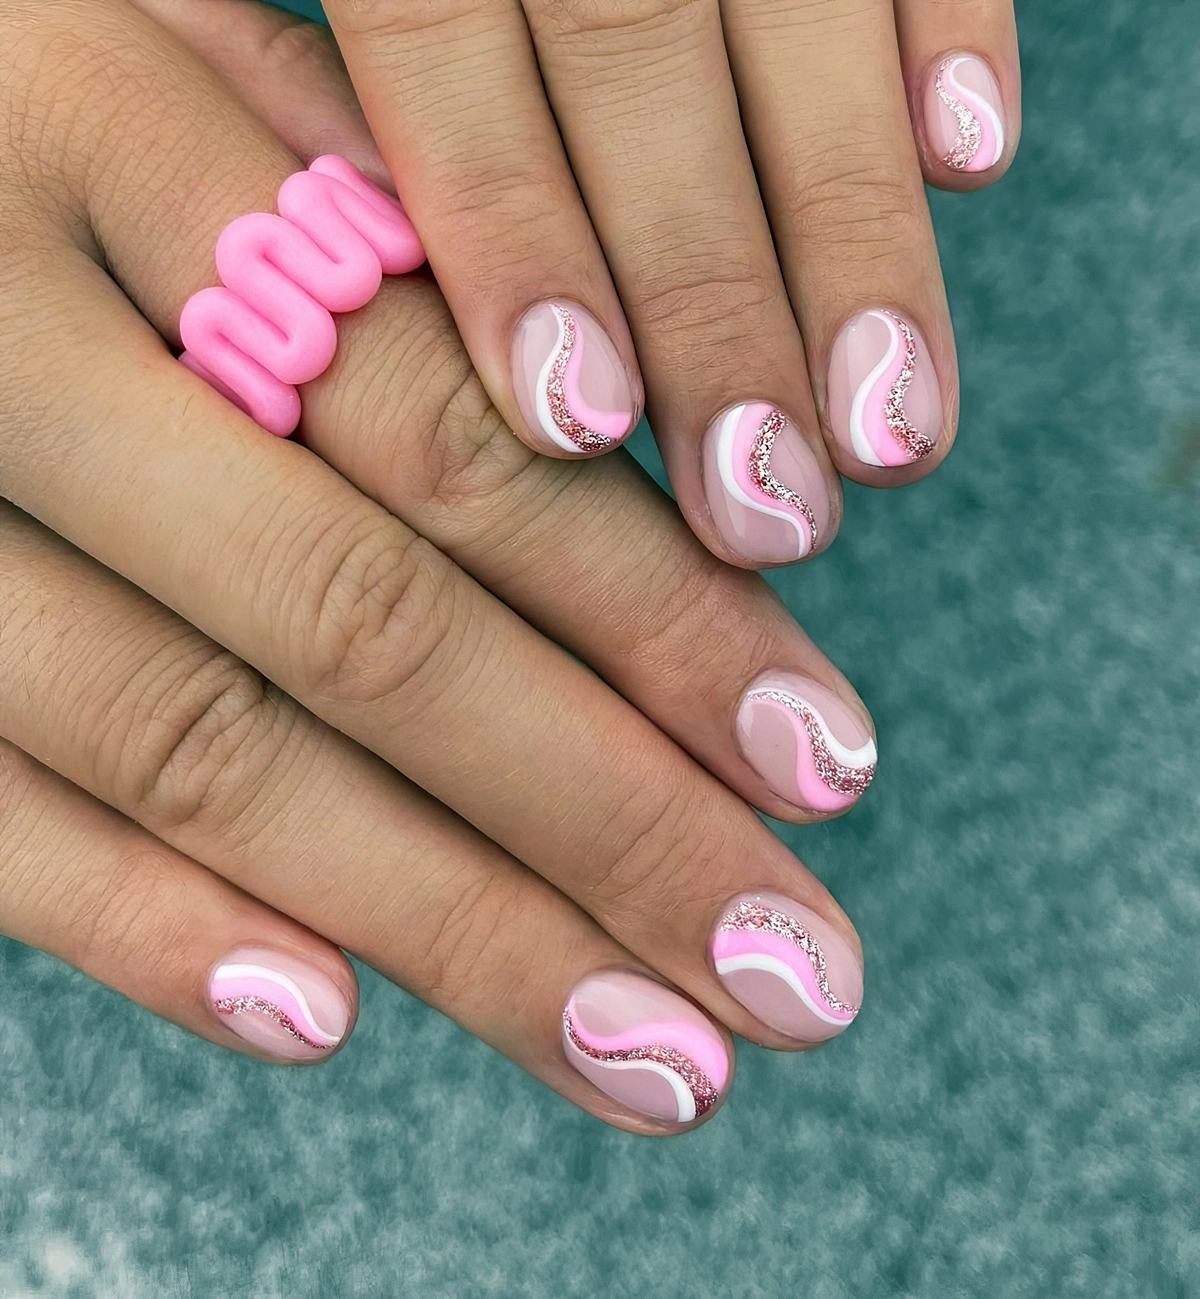 naegel rosa glitzer swirl nails design in weiss und hellrosa 